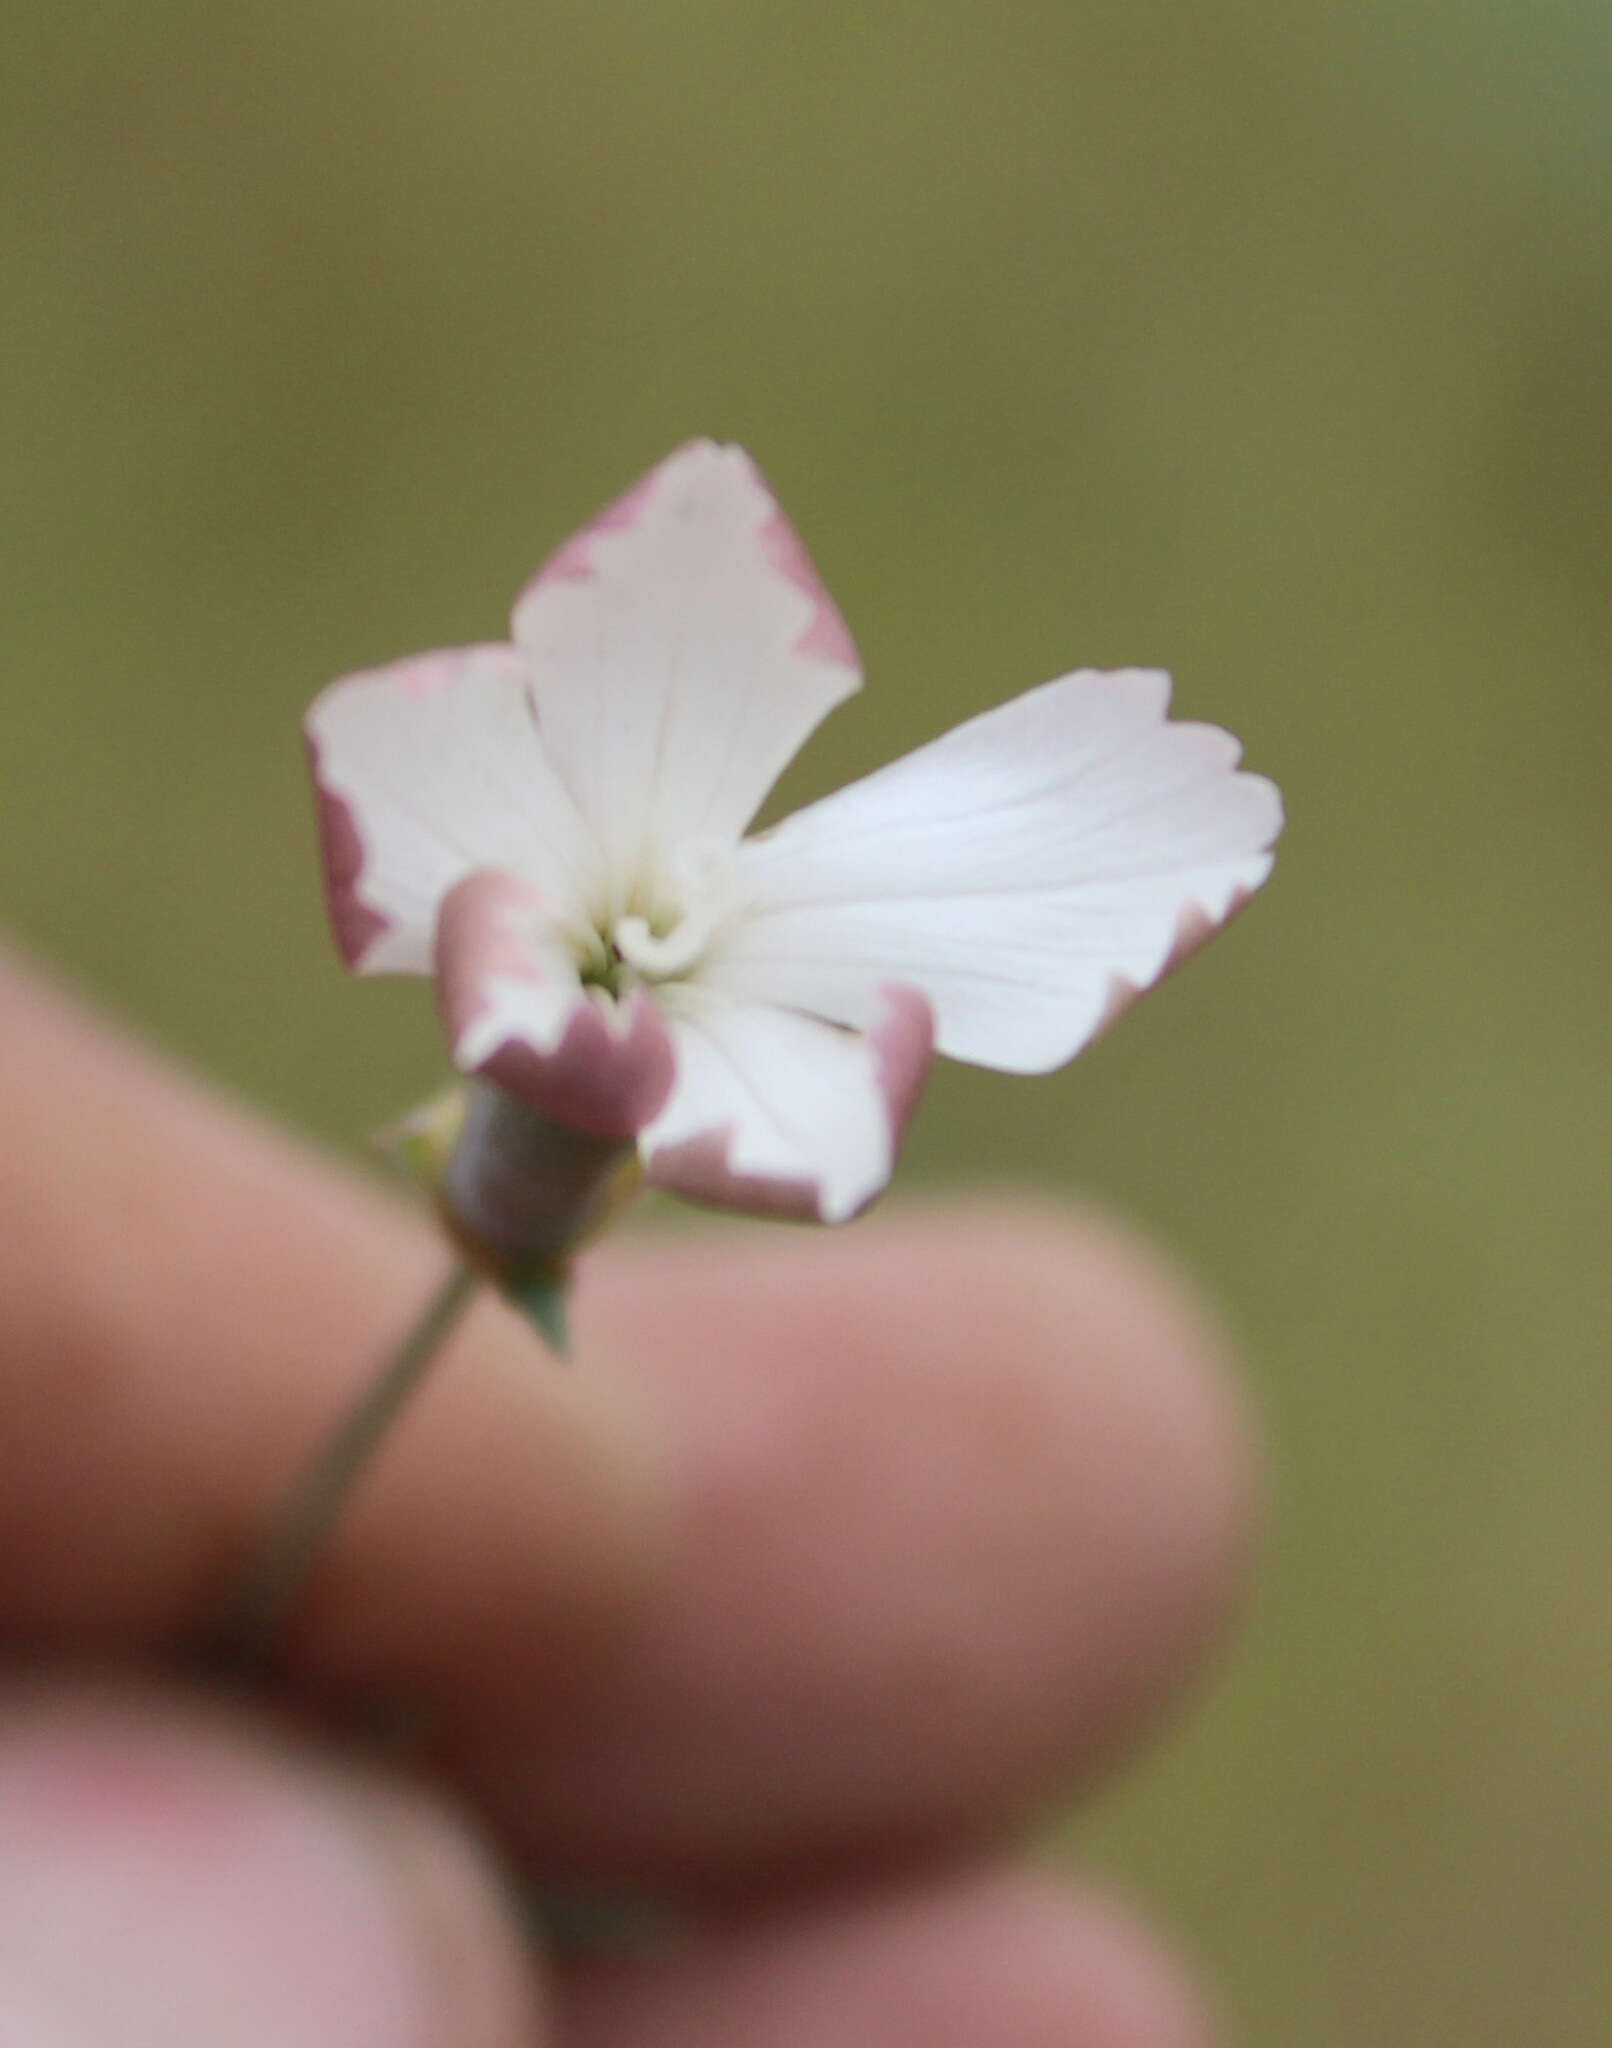 Image of Dianthus schemachensis Schischkin